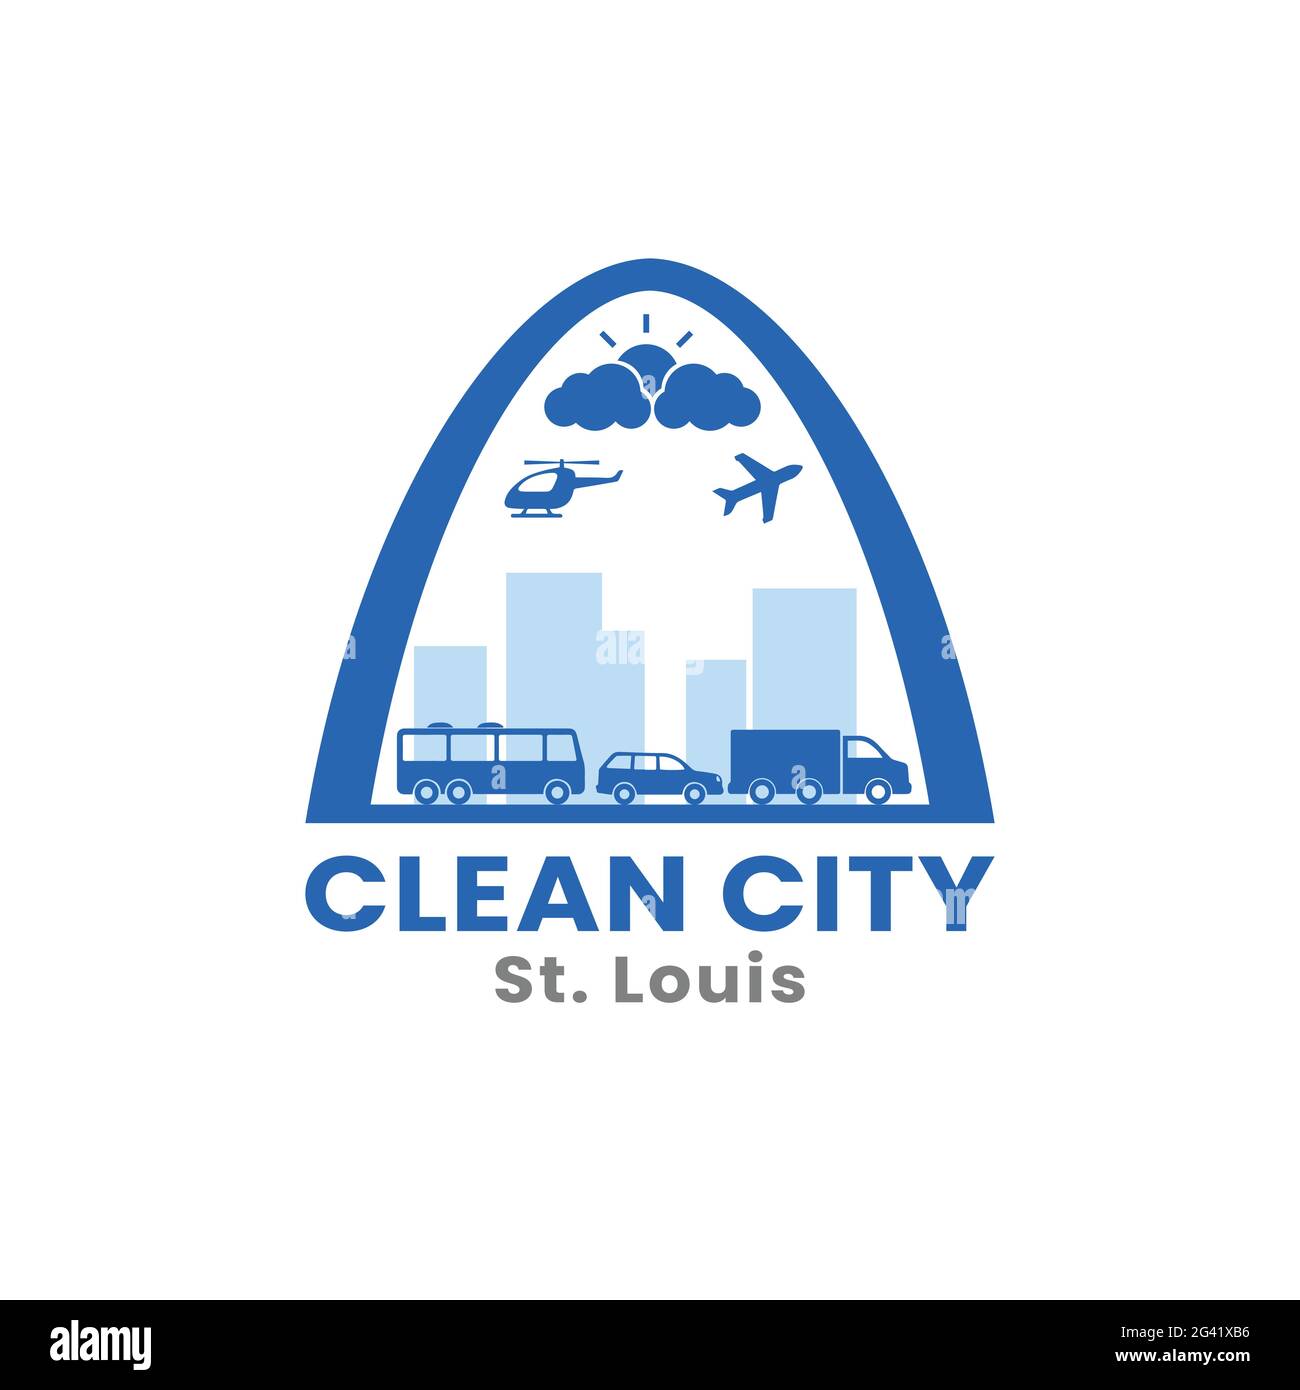 Downtown St. Louis Skyline für Clean City Logo Design Template. St. Louis ist die zweitgrößte Stadt in Missouri, USA Stock Vektor